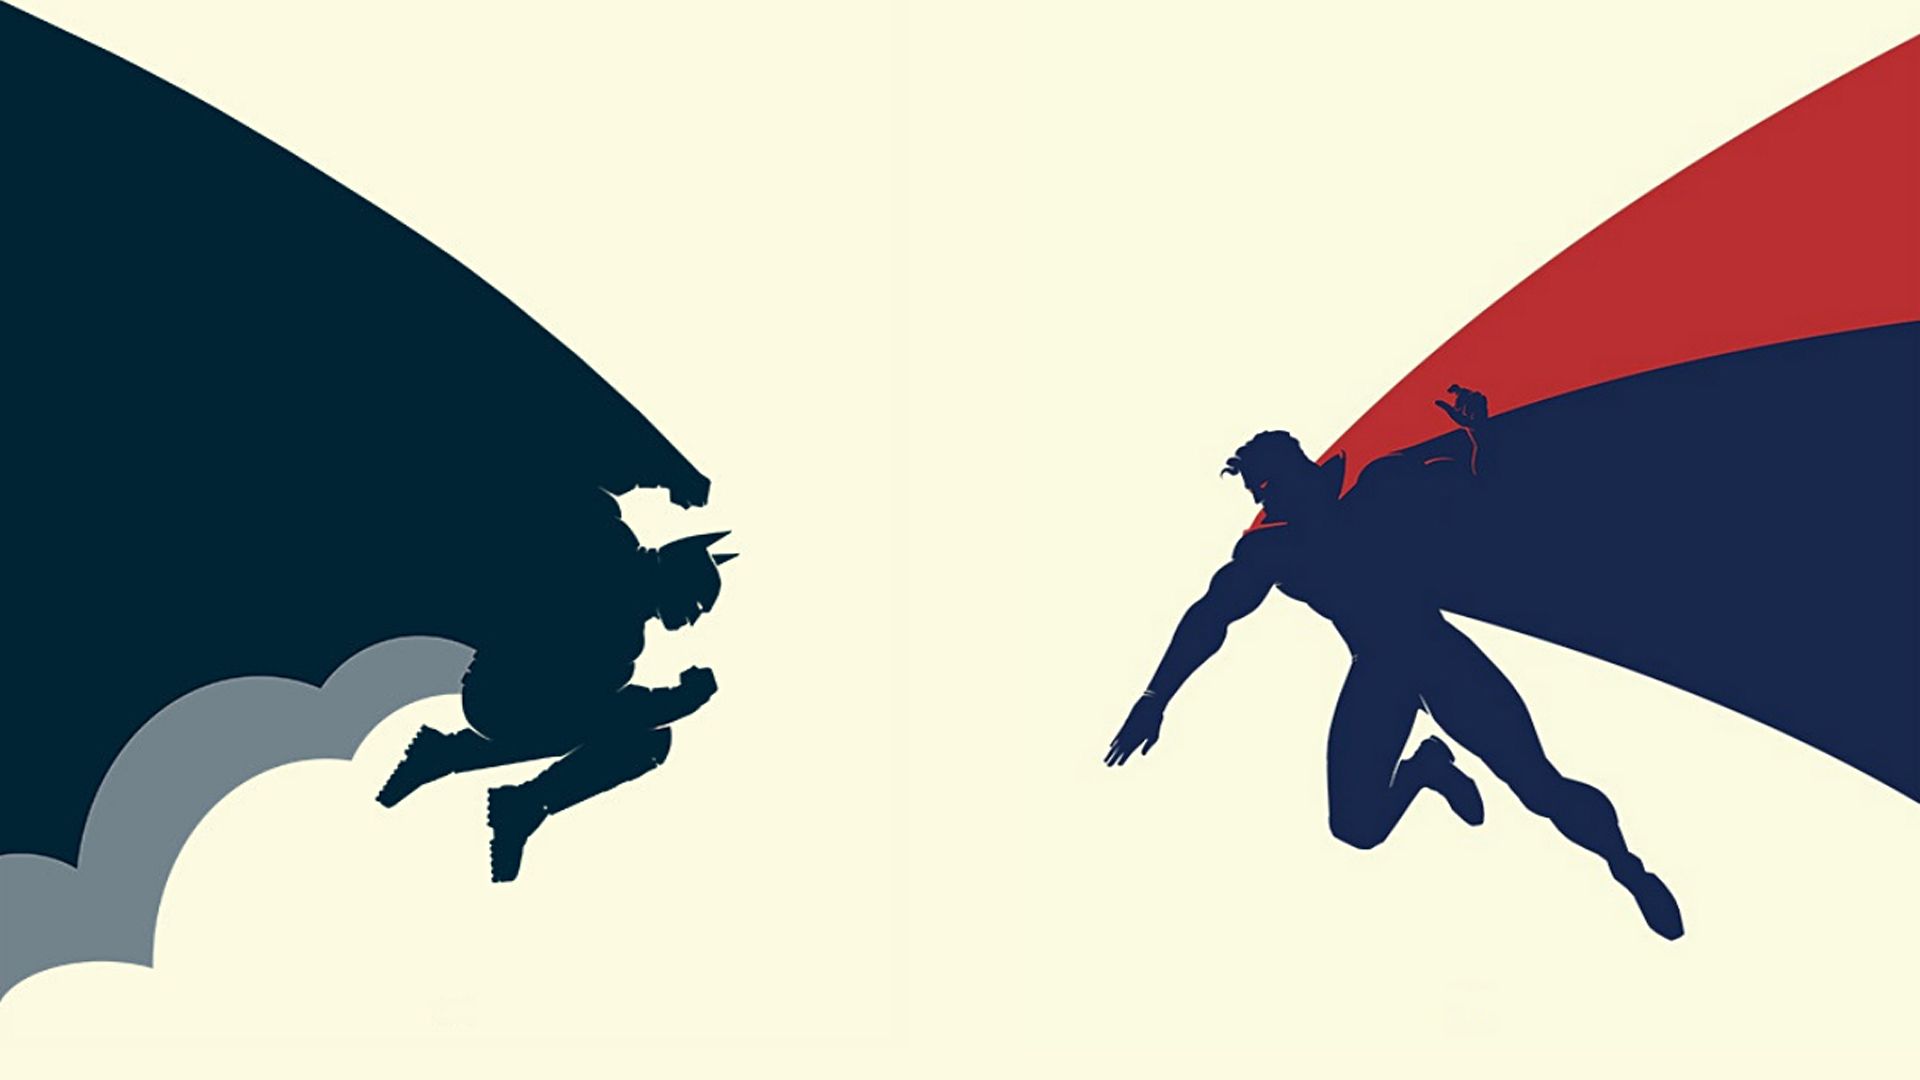 Heroes vs Superman / Good